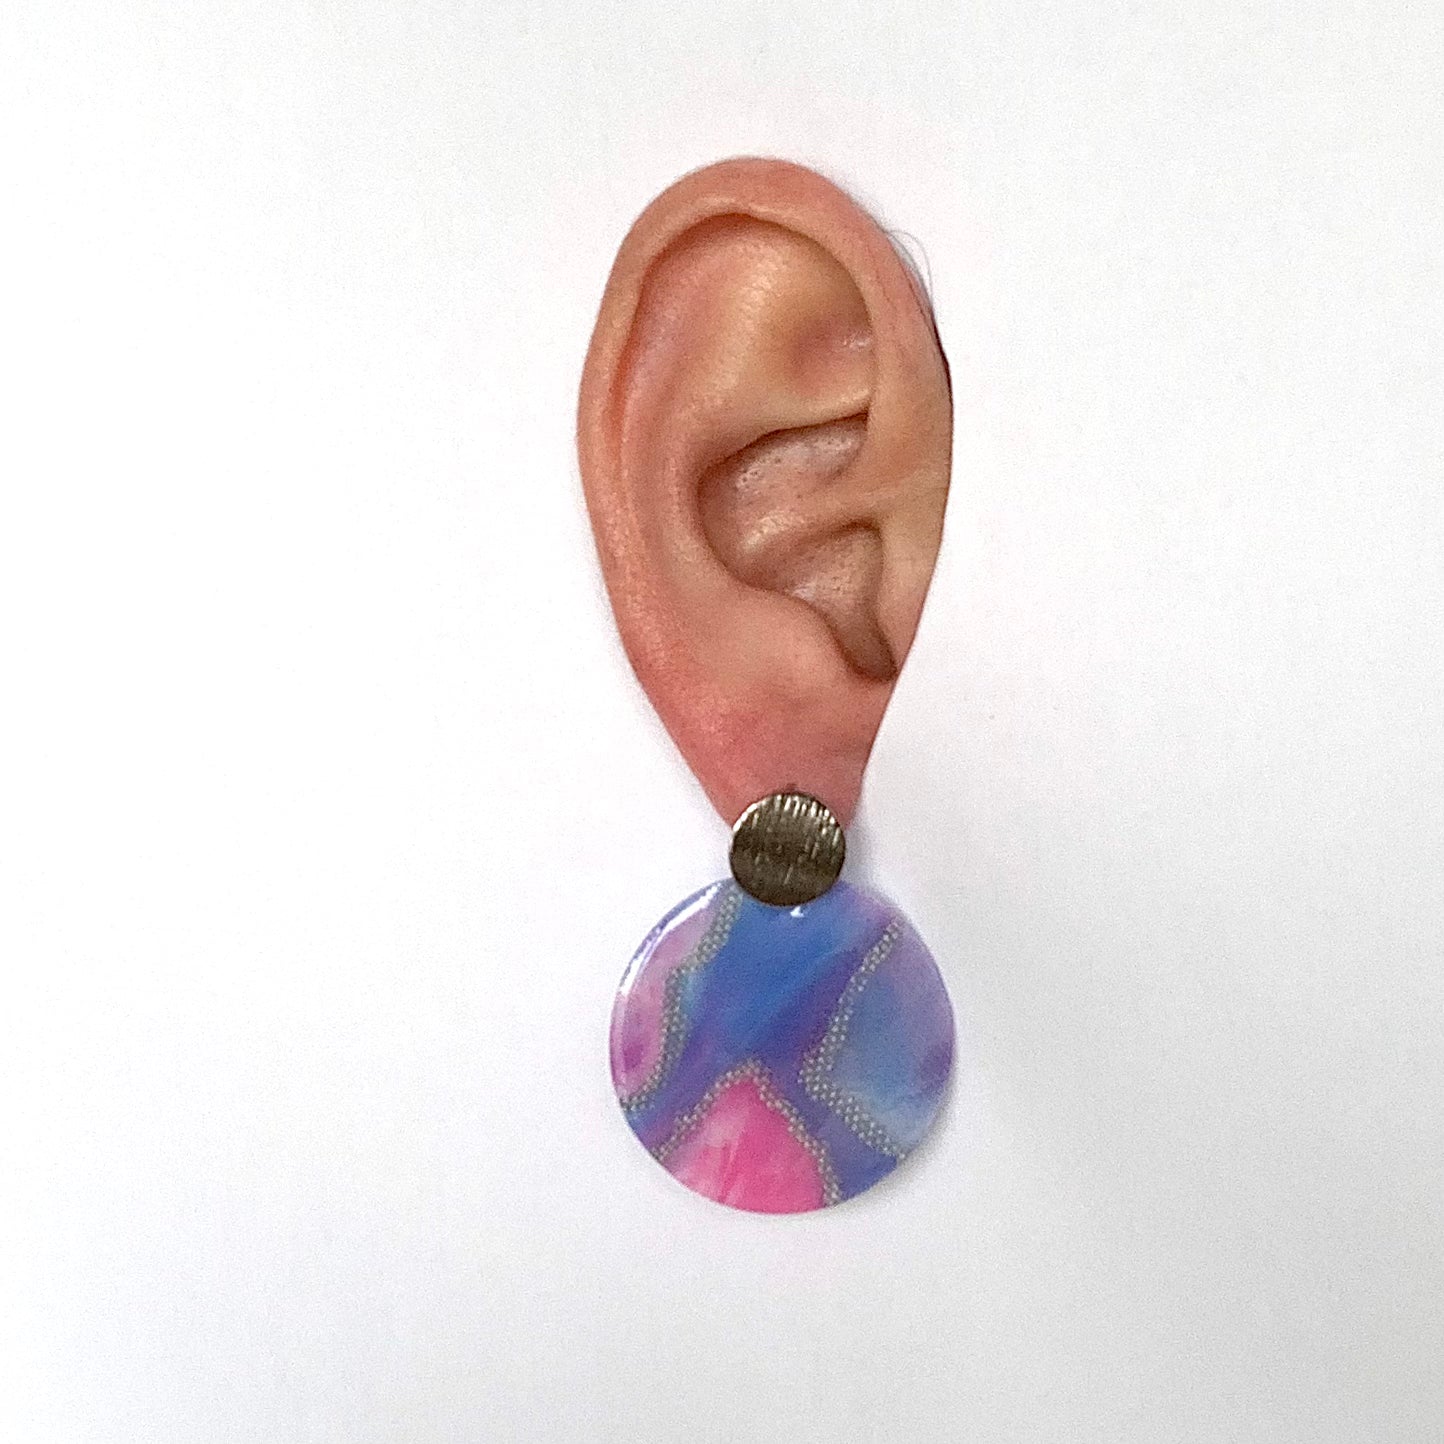 Cherry Blossom recycled plastic bottle tops earrings handmade in London artesian